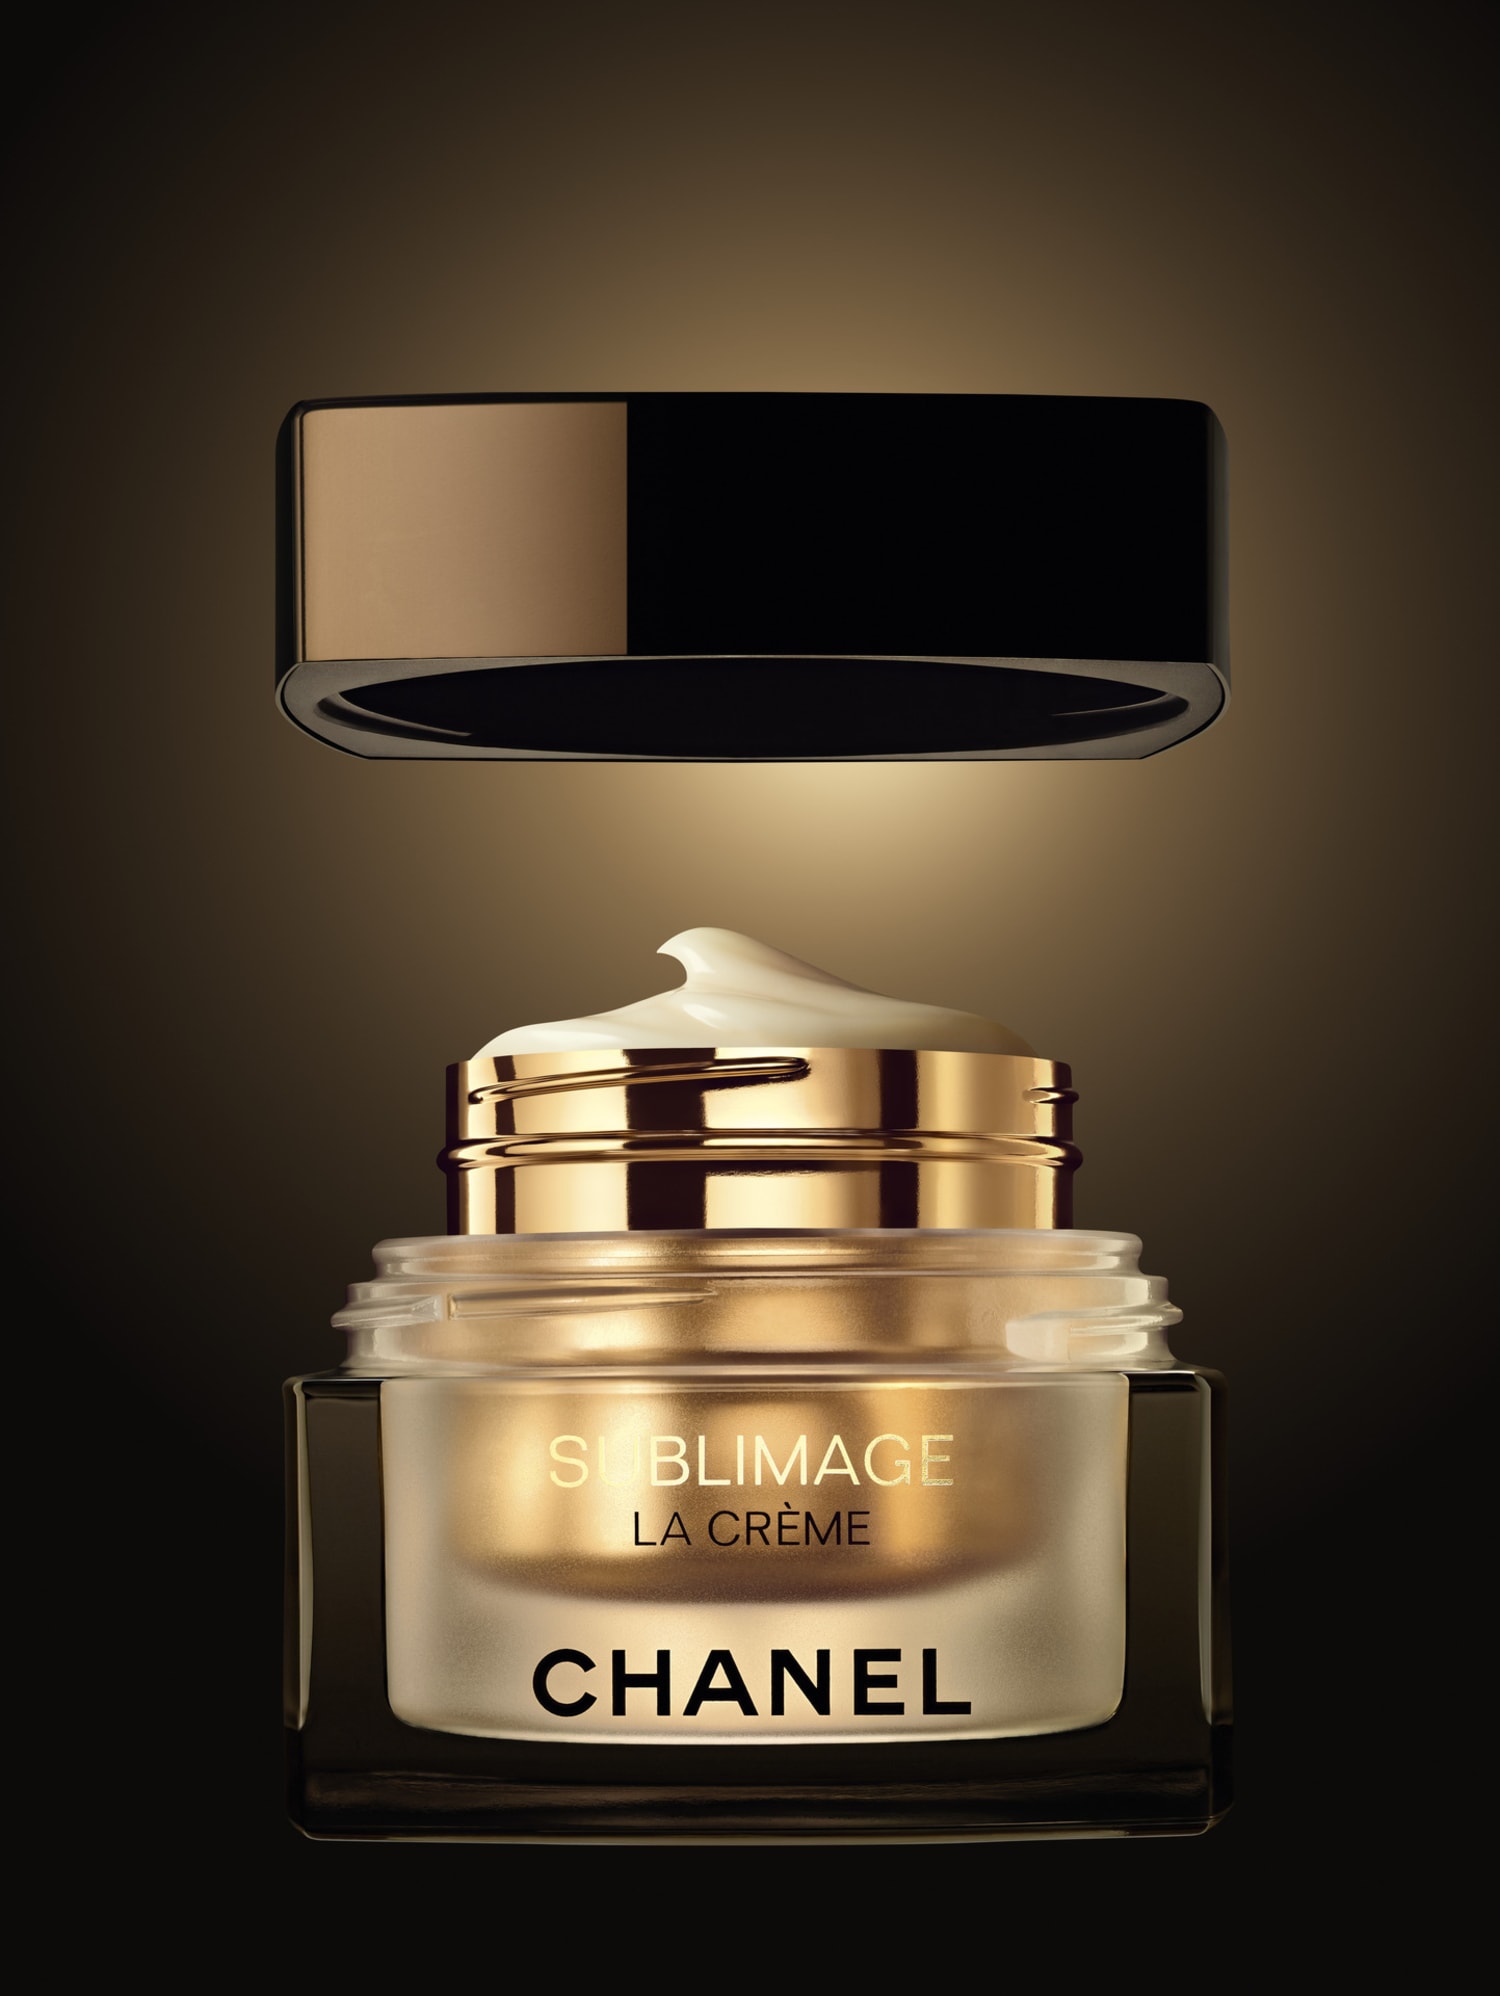 Review: CHANEL’s SUBLIMAGE La Crème Texture Suprême